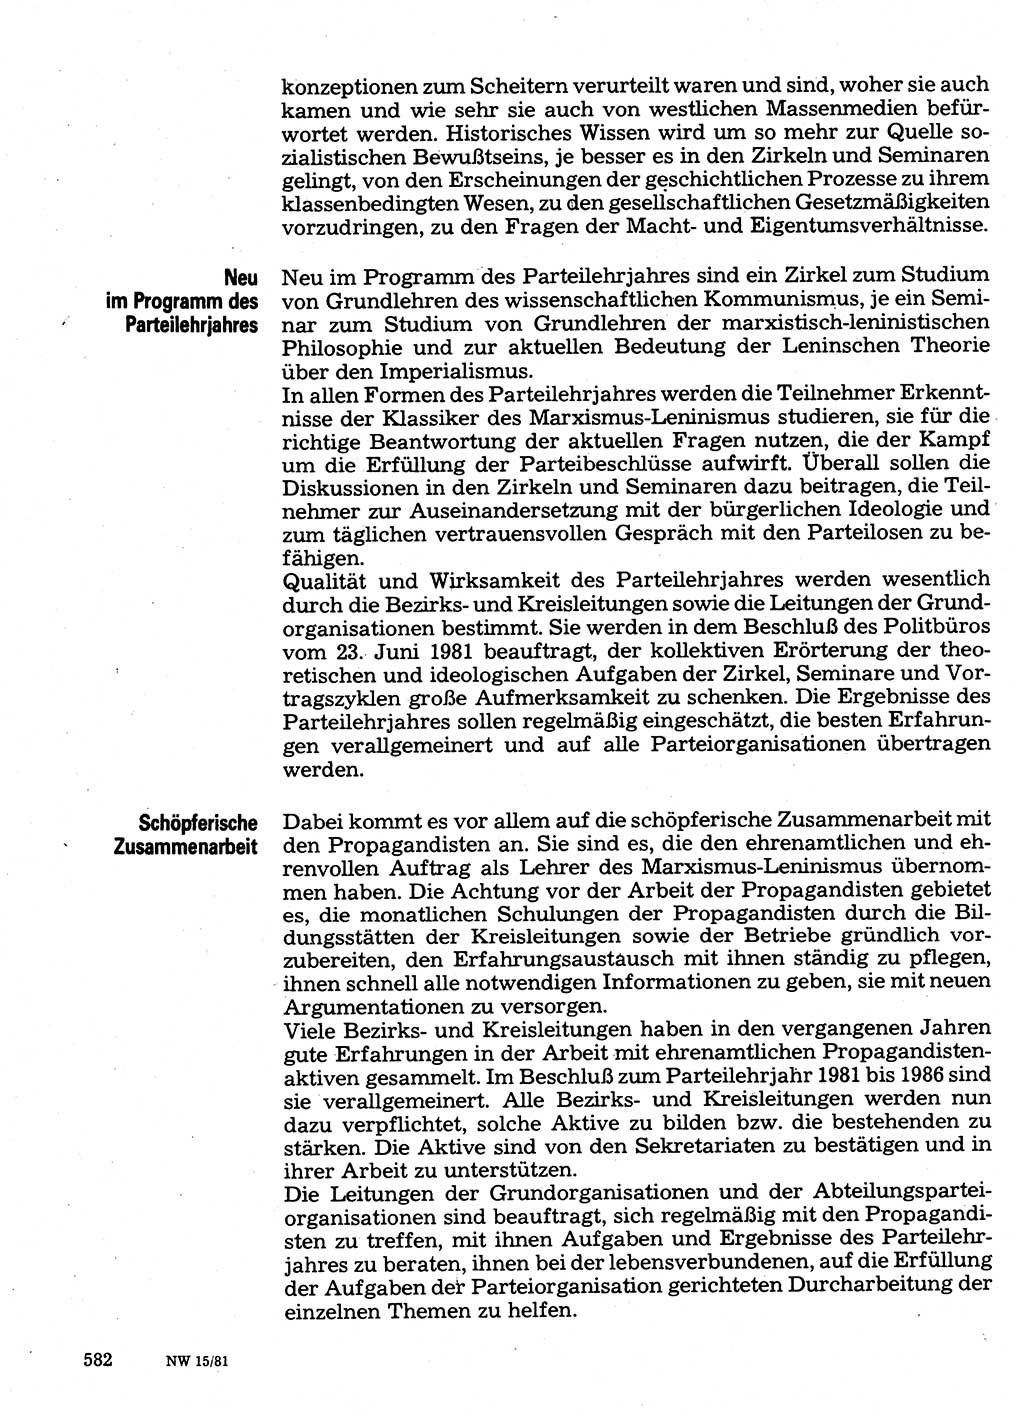 Neuer Weg (NW), Organ des Zentralkomitees (ZK) der SED (Sozialistische Einheitspartei Deutschlands) für Fragen des Parteilebens, 36. Jahrgang [Deutsche Demokratische Republik (DDR)] 1981, Seite 582 (NW ZK SED DDR 1981, S. 582)